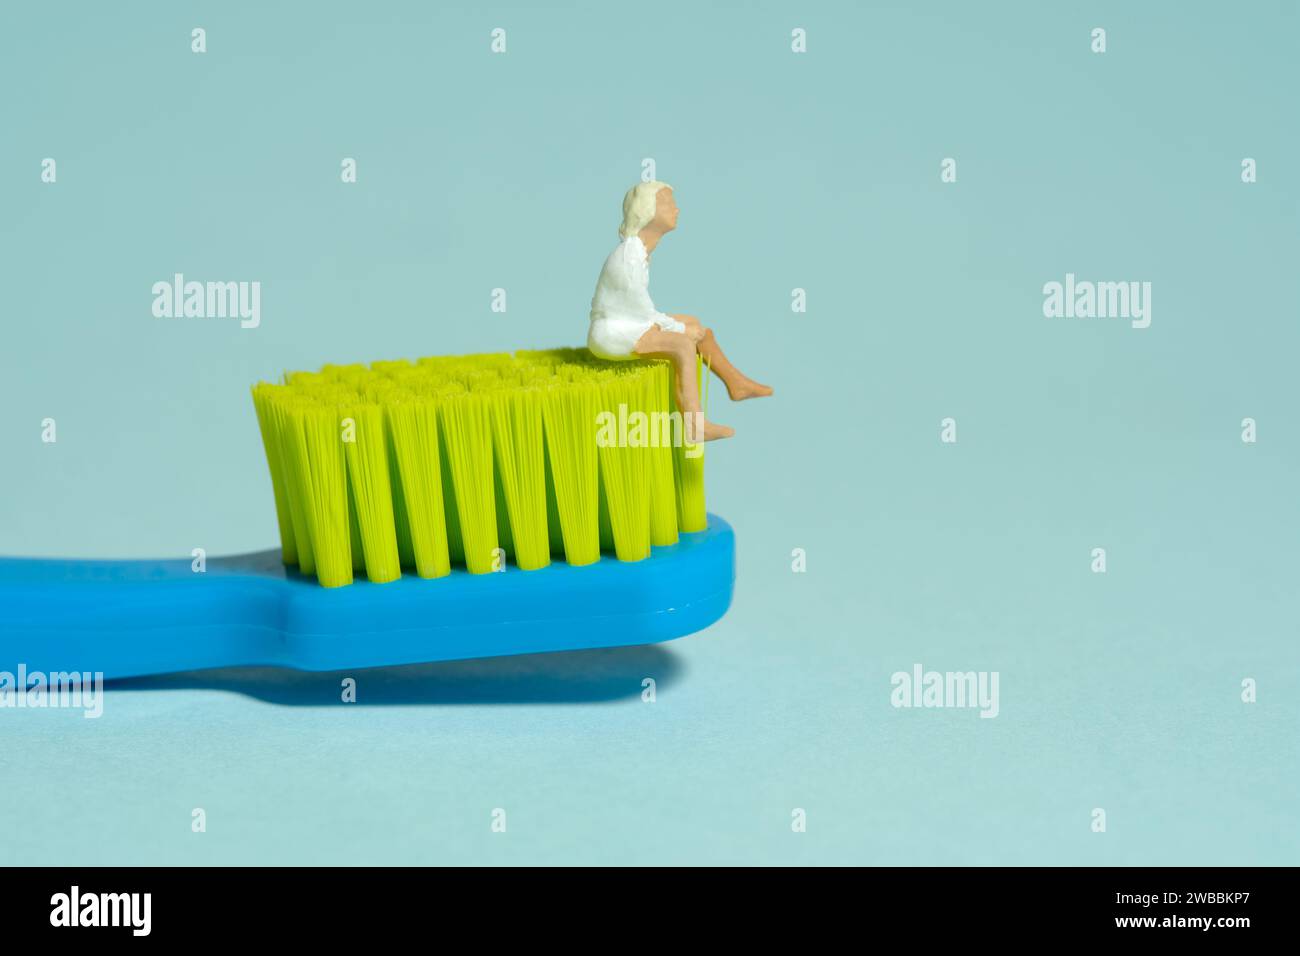 Fotografia di figure giocattolo in miniatura. Una ragazza adolescente seduta sopra lo spazzolino da denti. Isolato su sfondo blu. Foto immagine Foto Stock